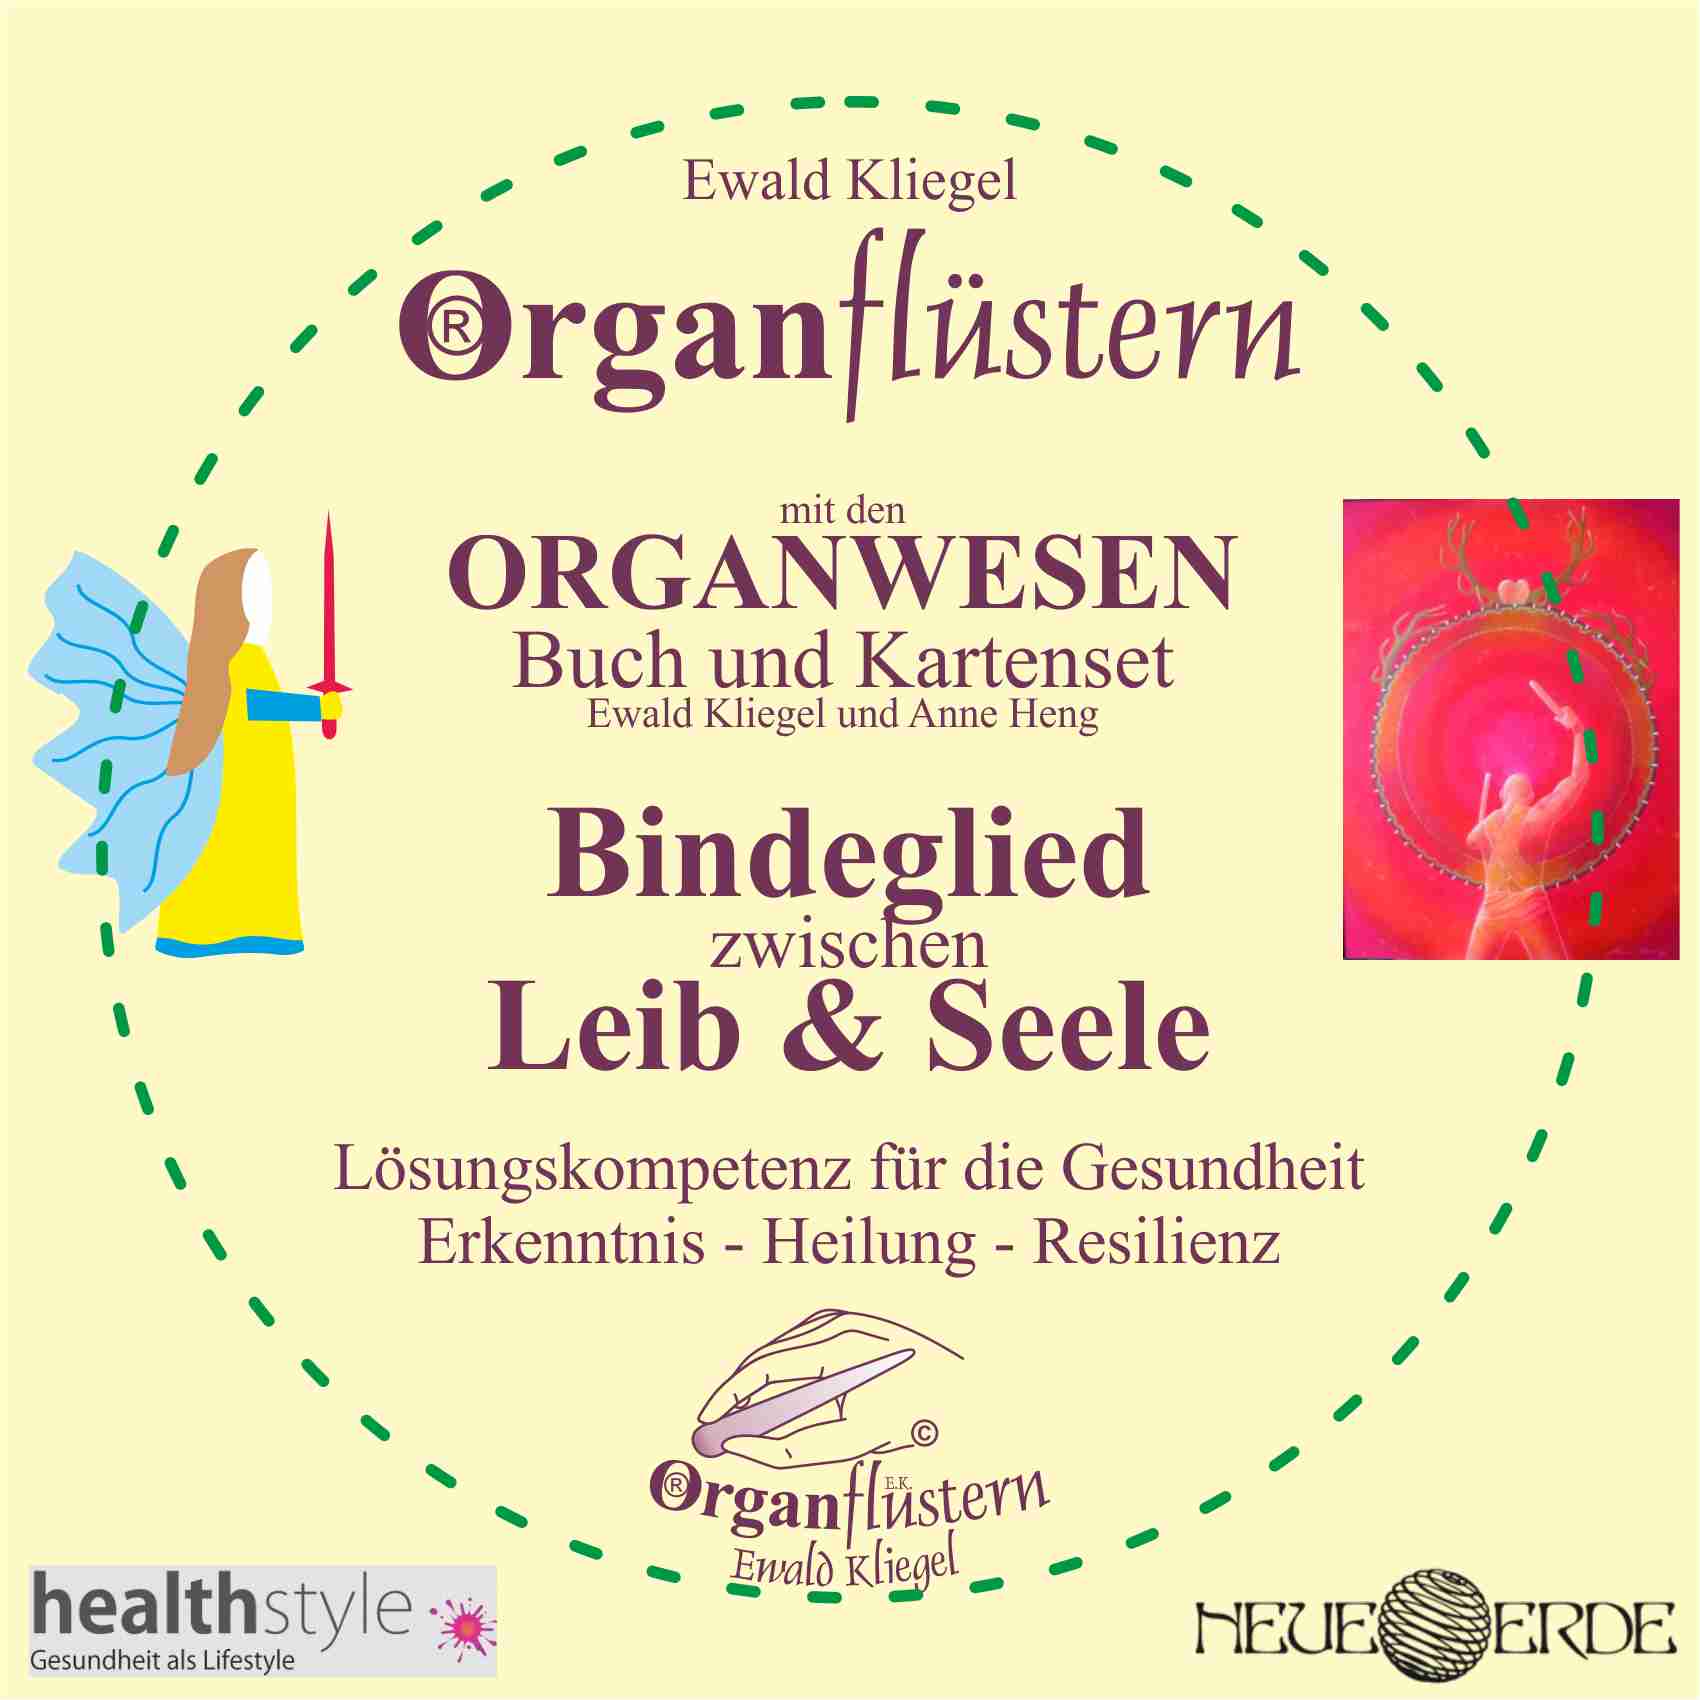 Organflüstern® und Organwesen - Organ-Sprache als Heil-Kunst mit der Weisheit deines Körpers Ewald Kliegel